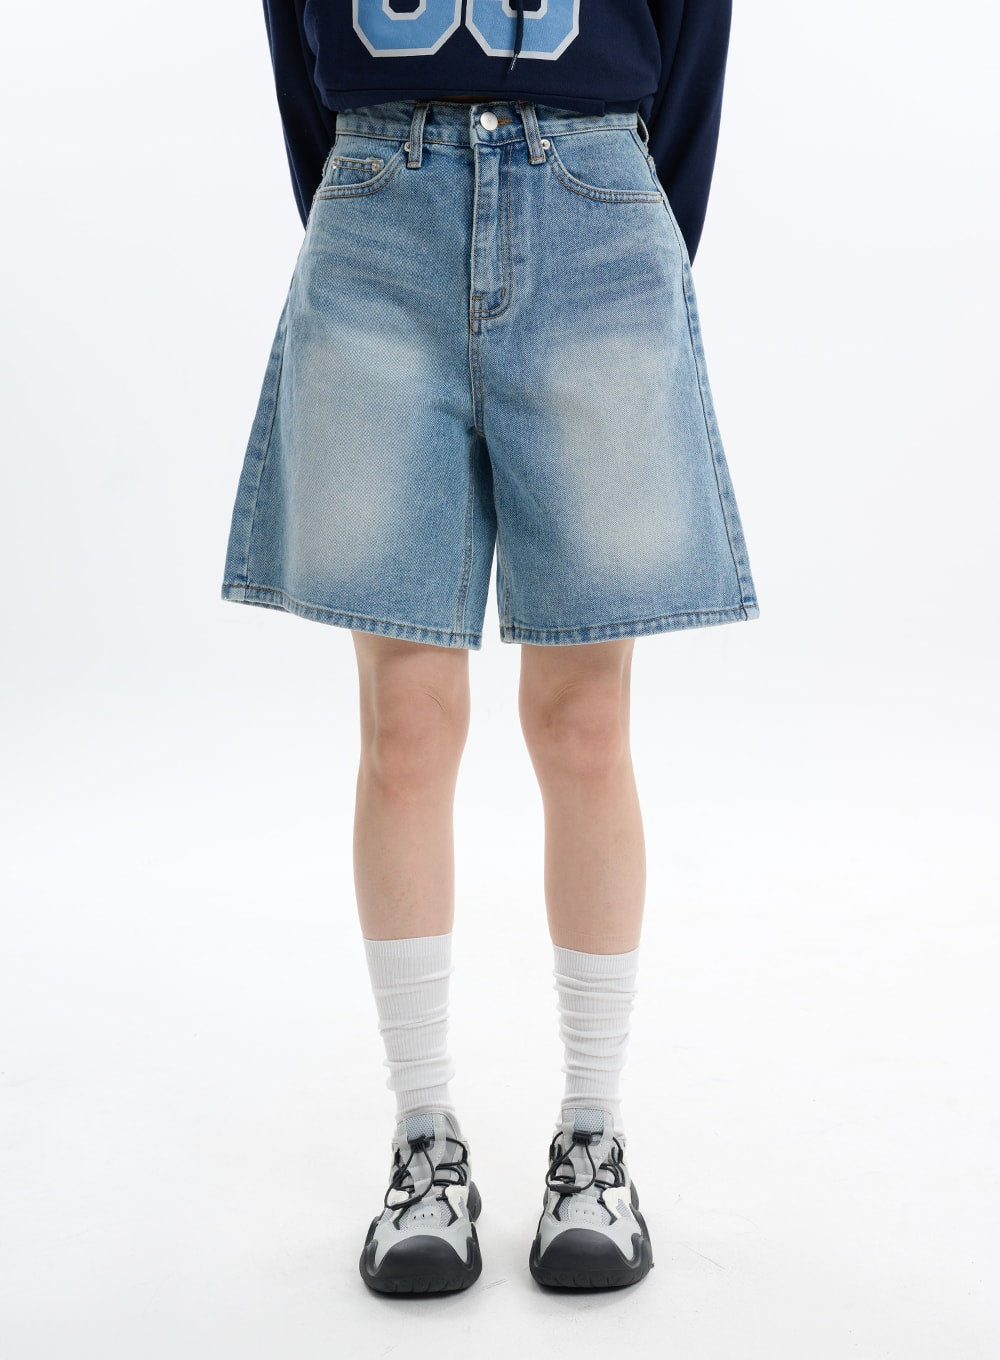 washed-denim-shorts-jorts-if413 / Light blue